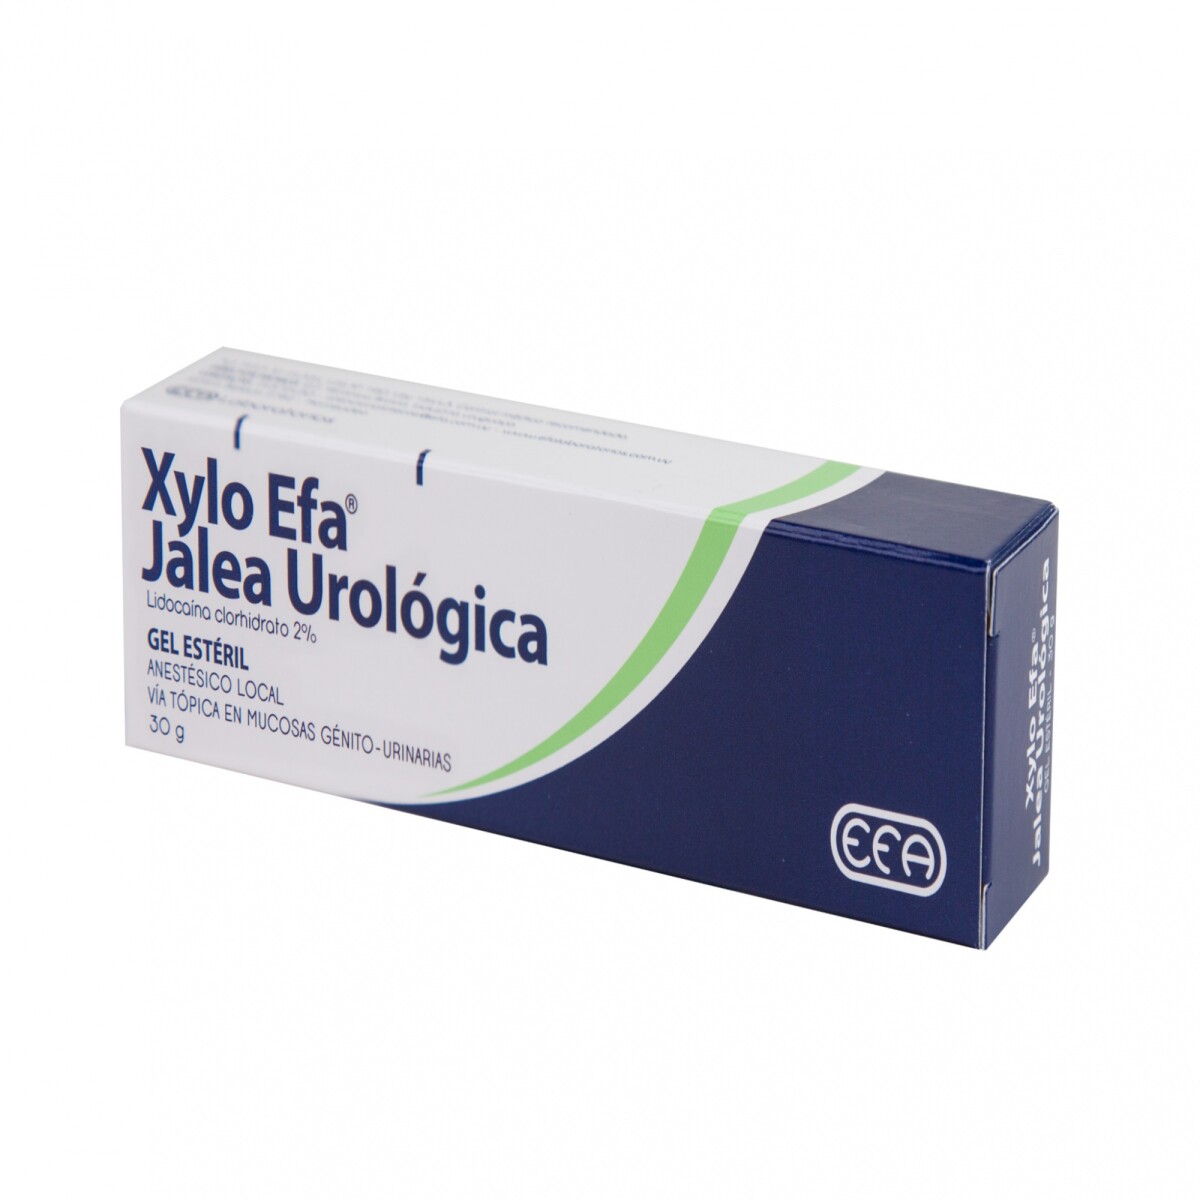 Xylo Efa Urologica 